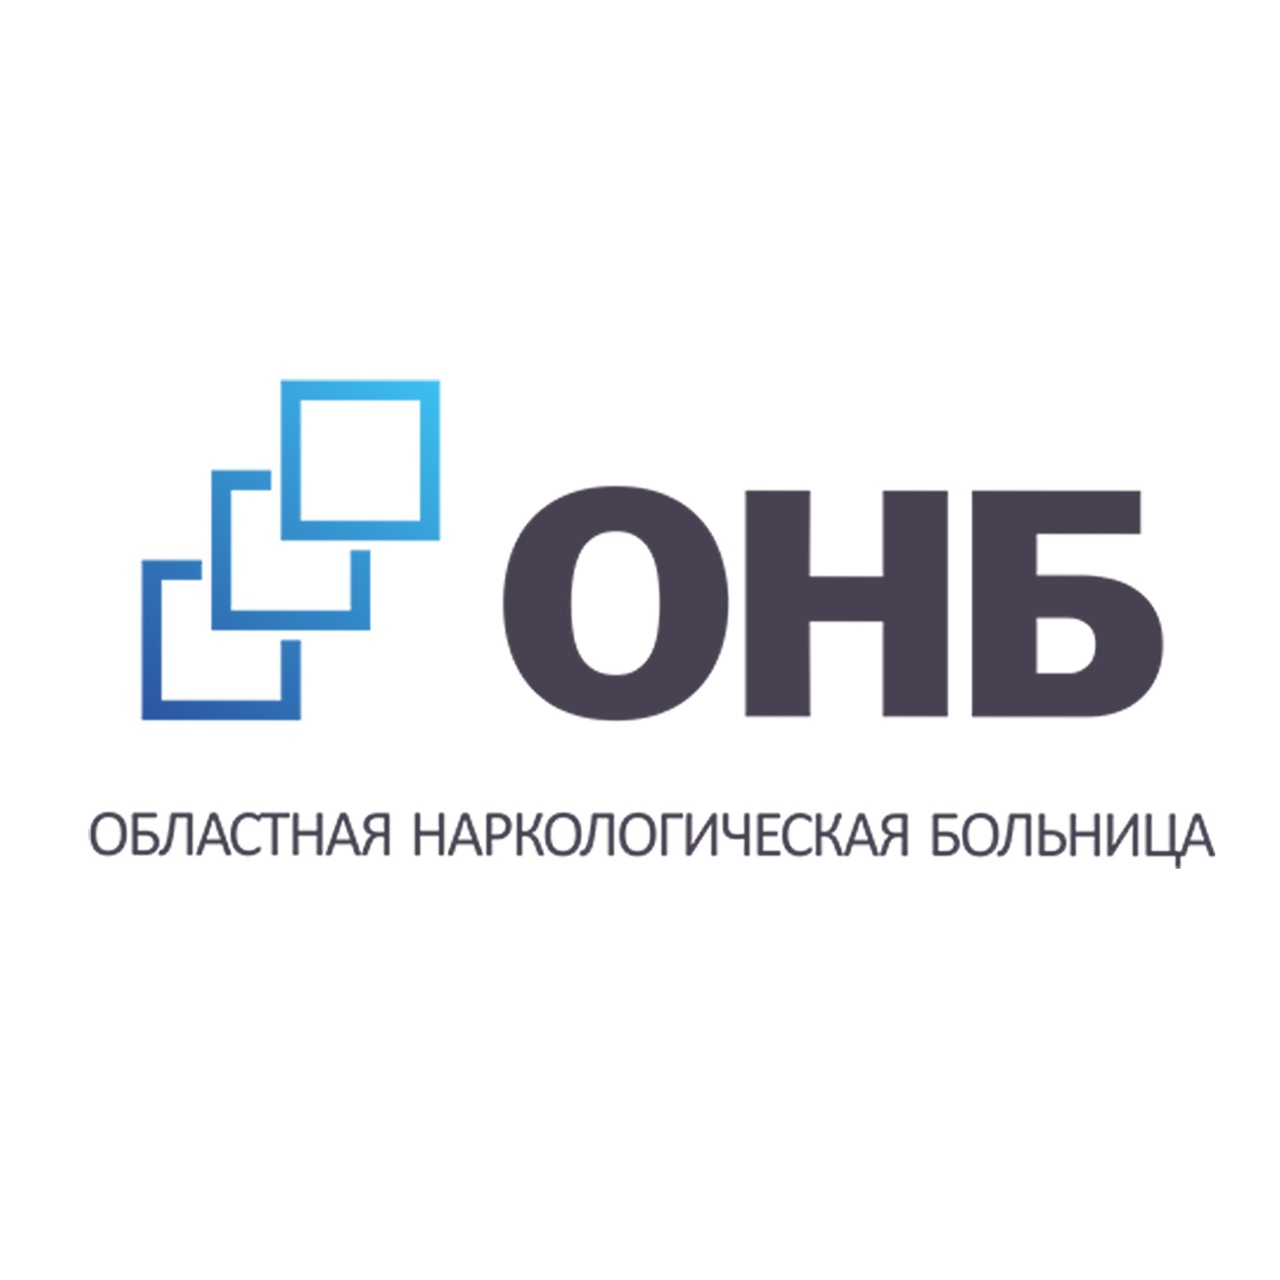 Государственное автономное учреждение здравоохранения Свердловской области "Областная наркологическая больница"